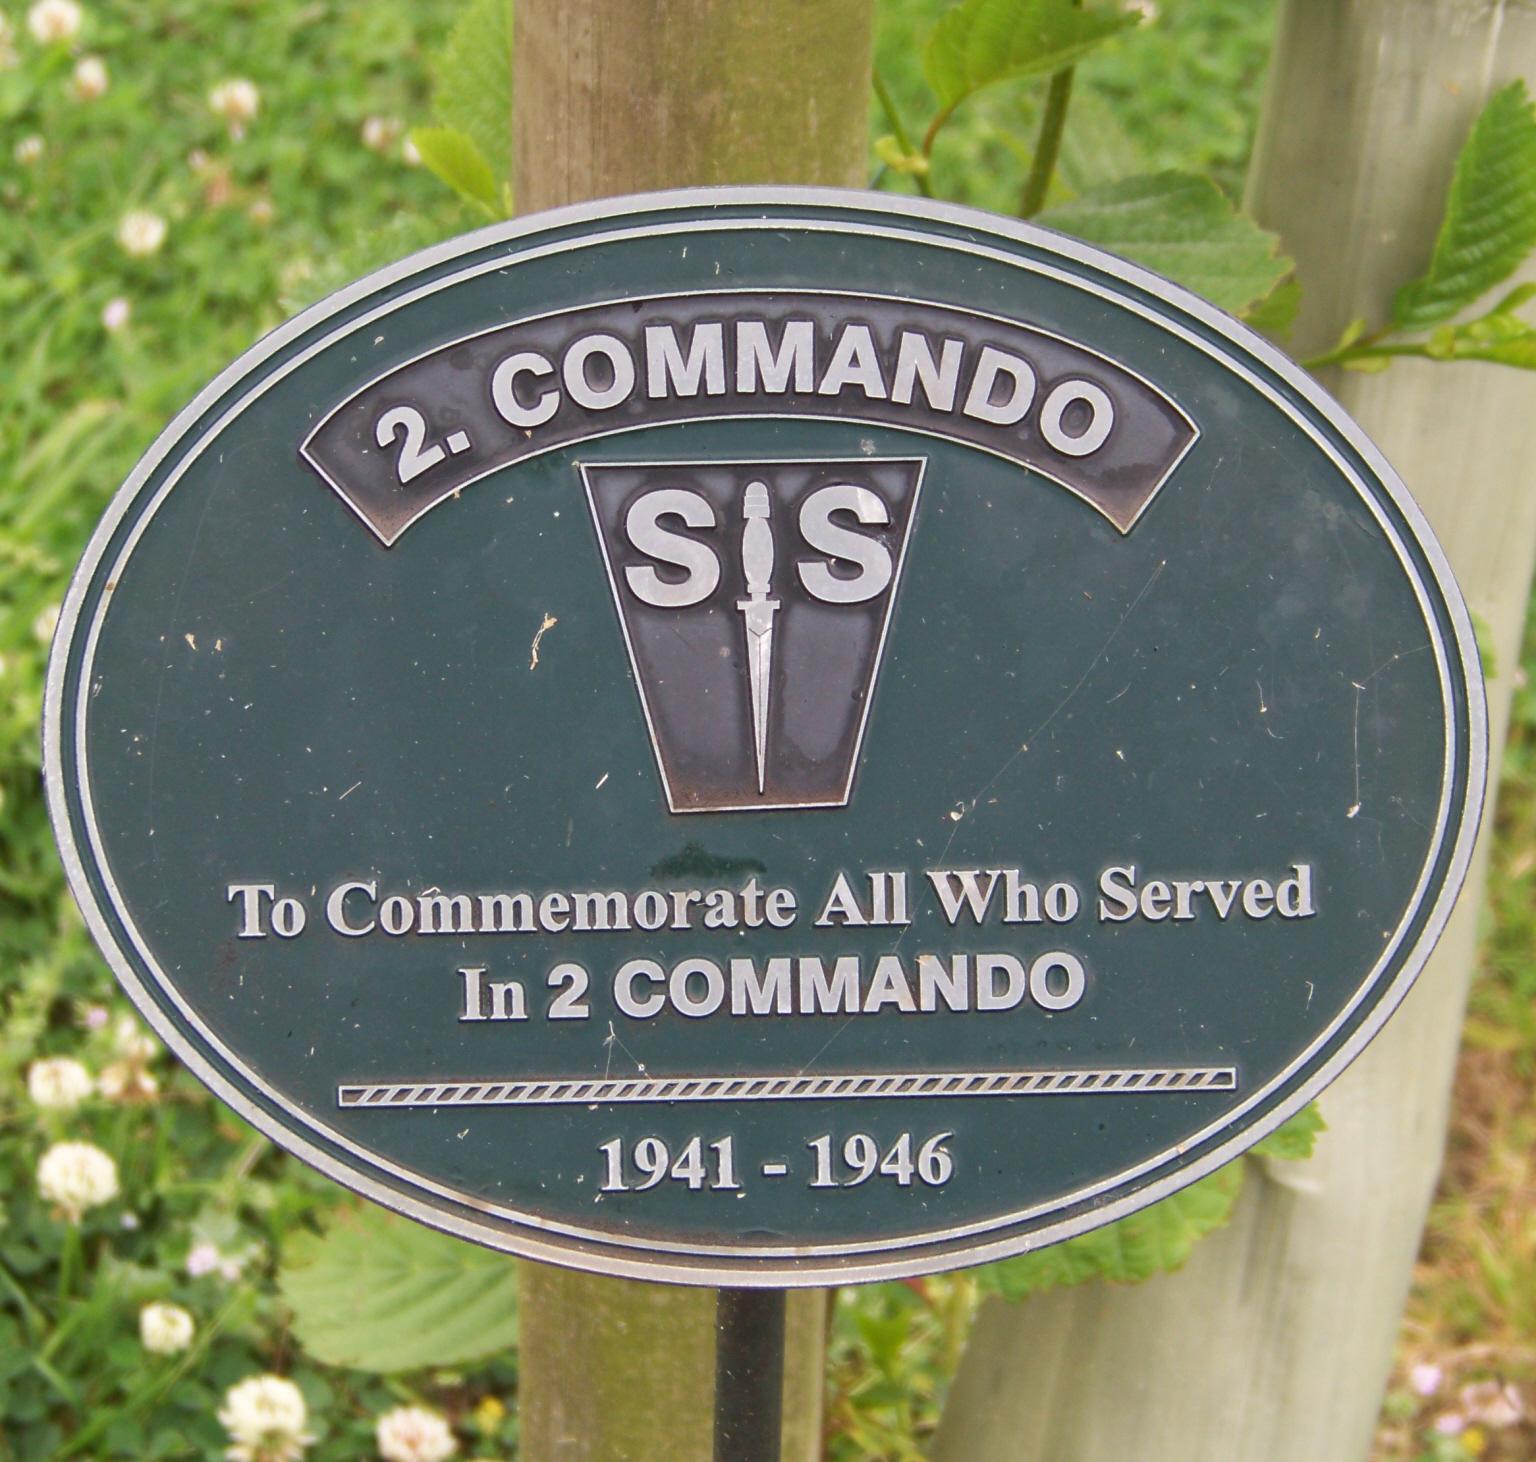 No.2 Commando Memorial Plaque at Alrewas